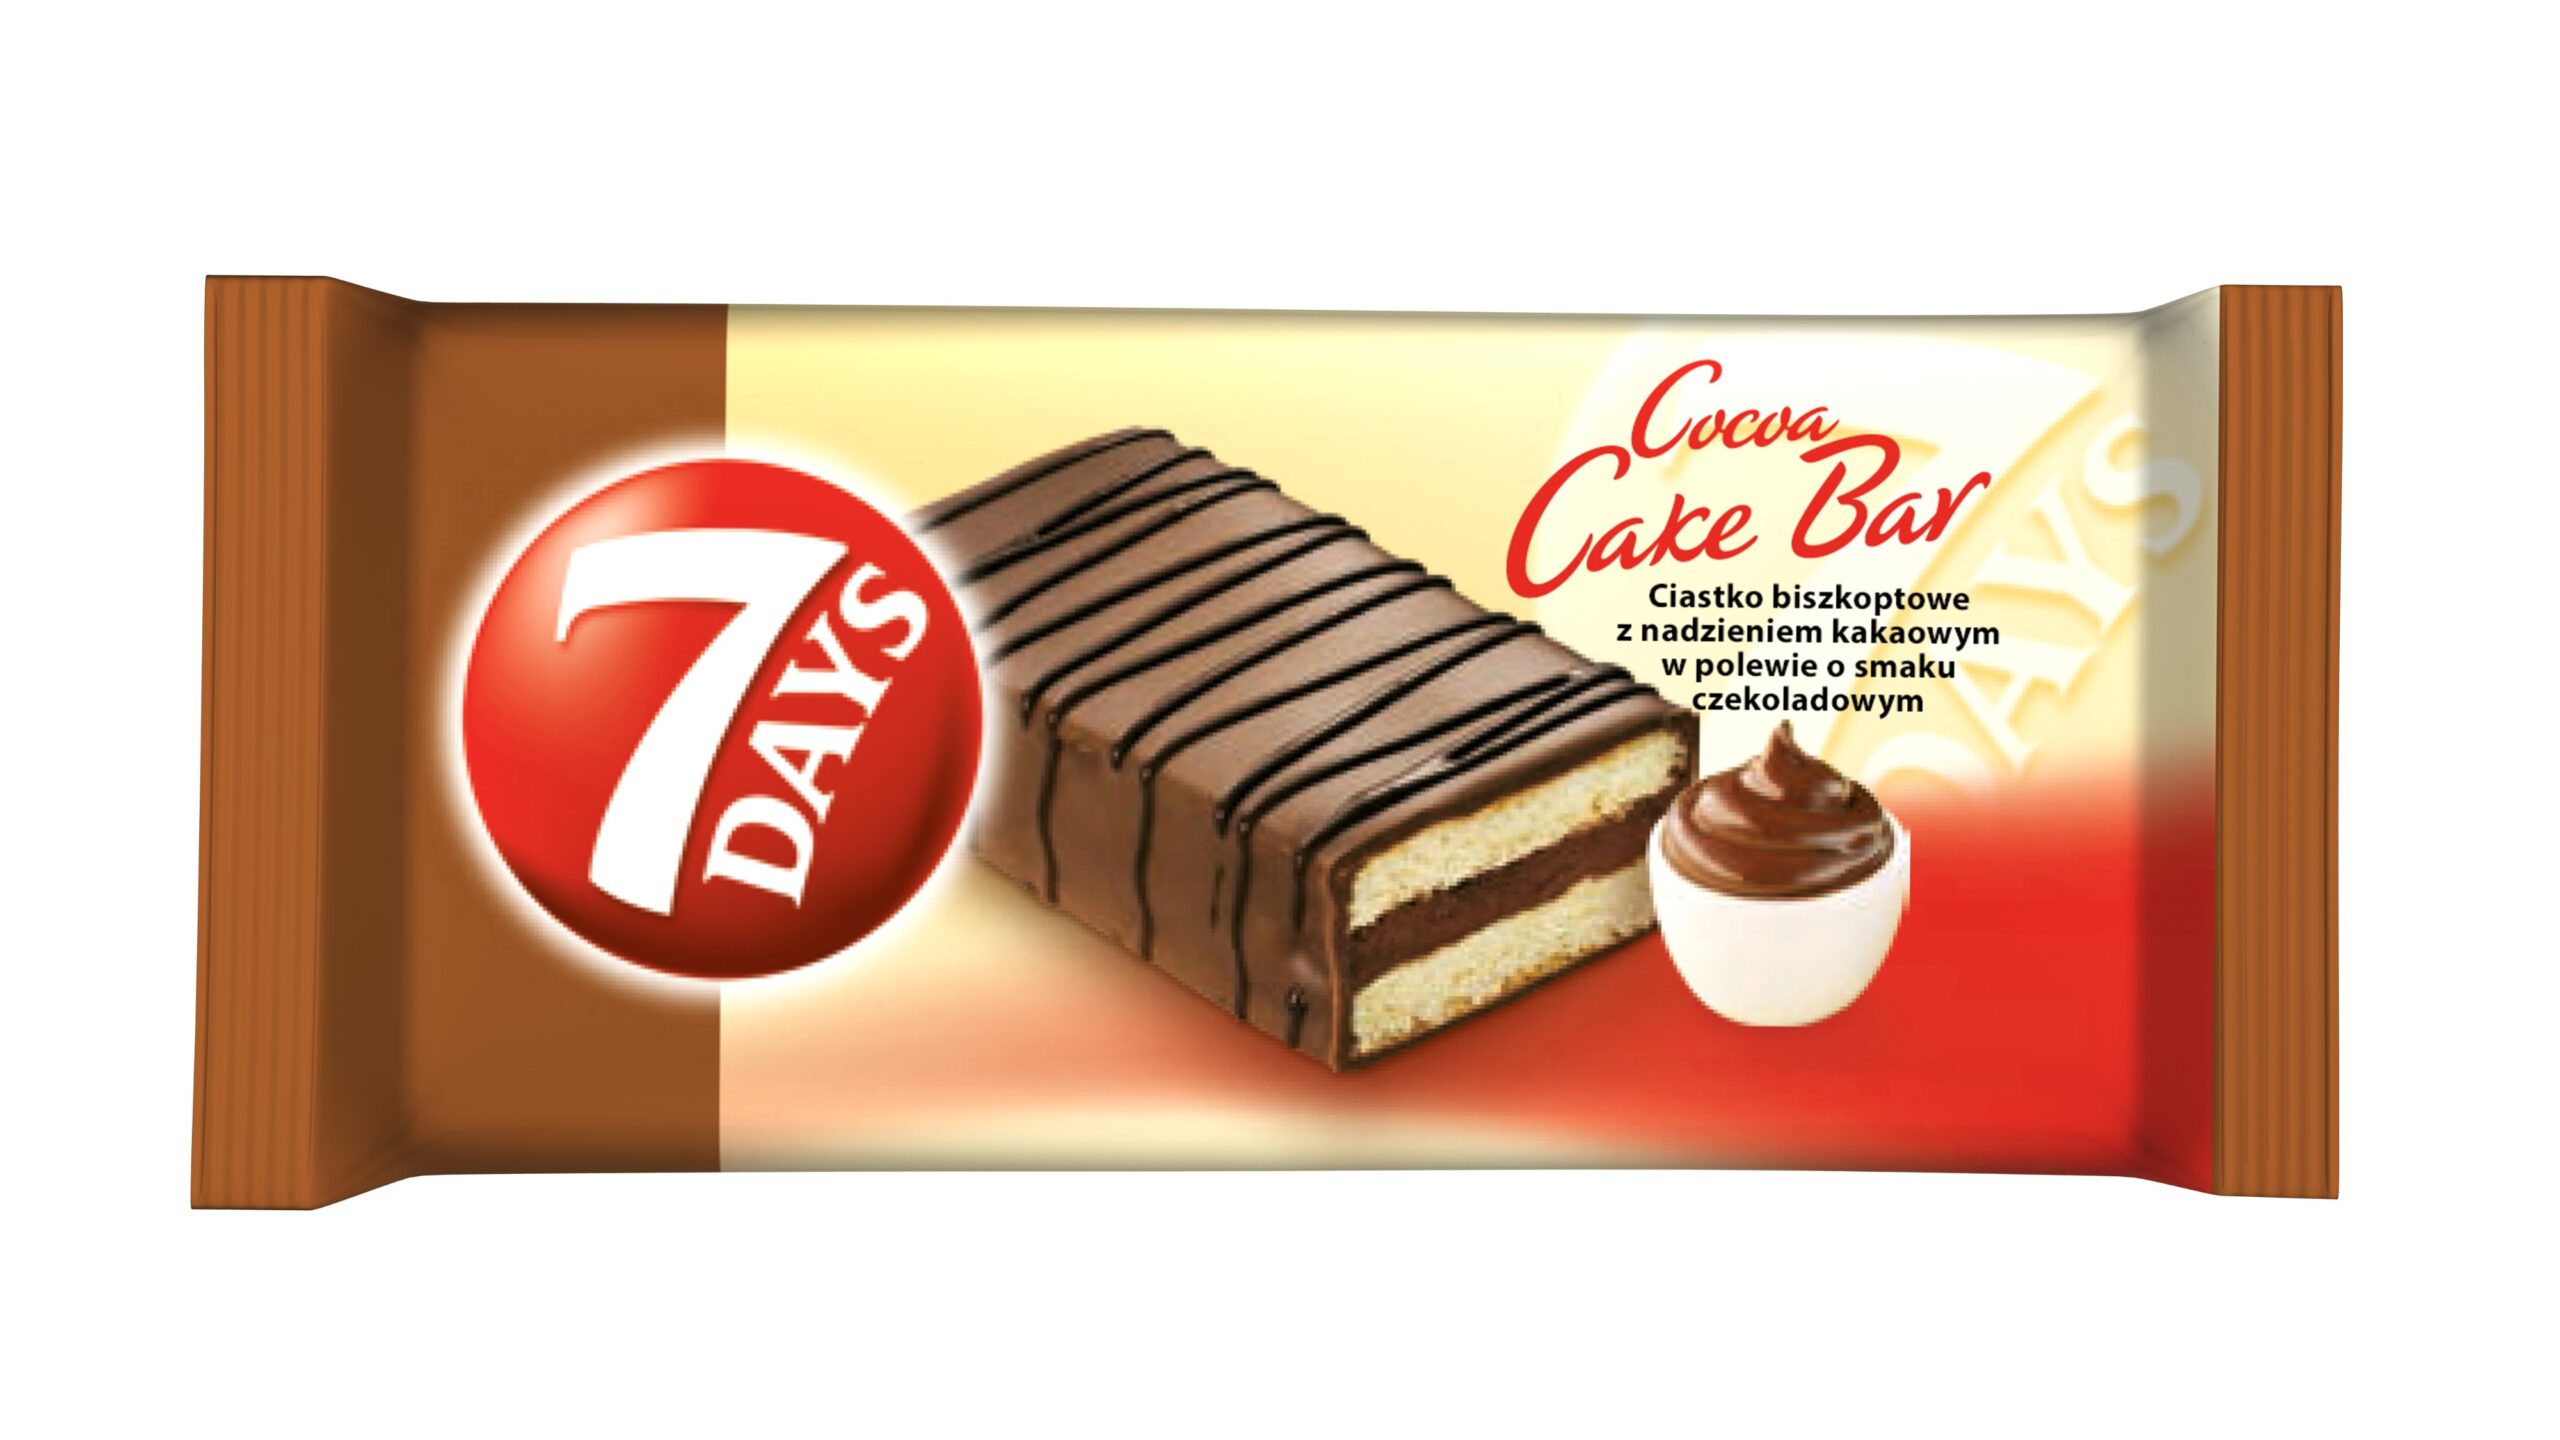 7 Days Cake Bar o smaku kakaowym 32g